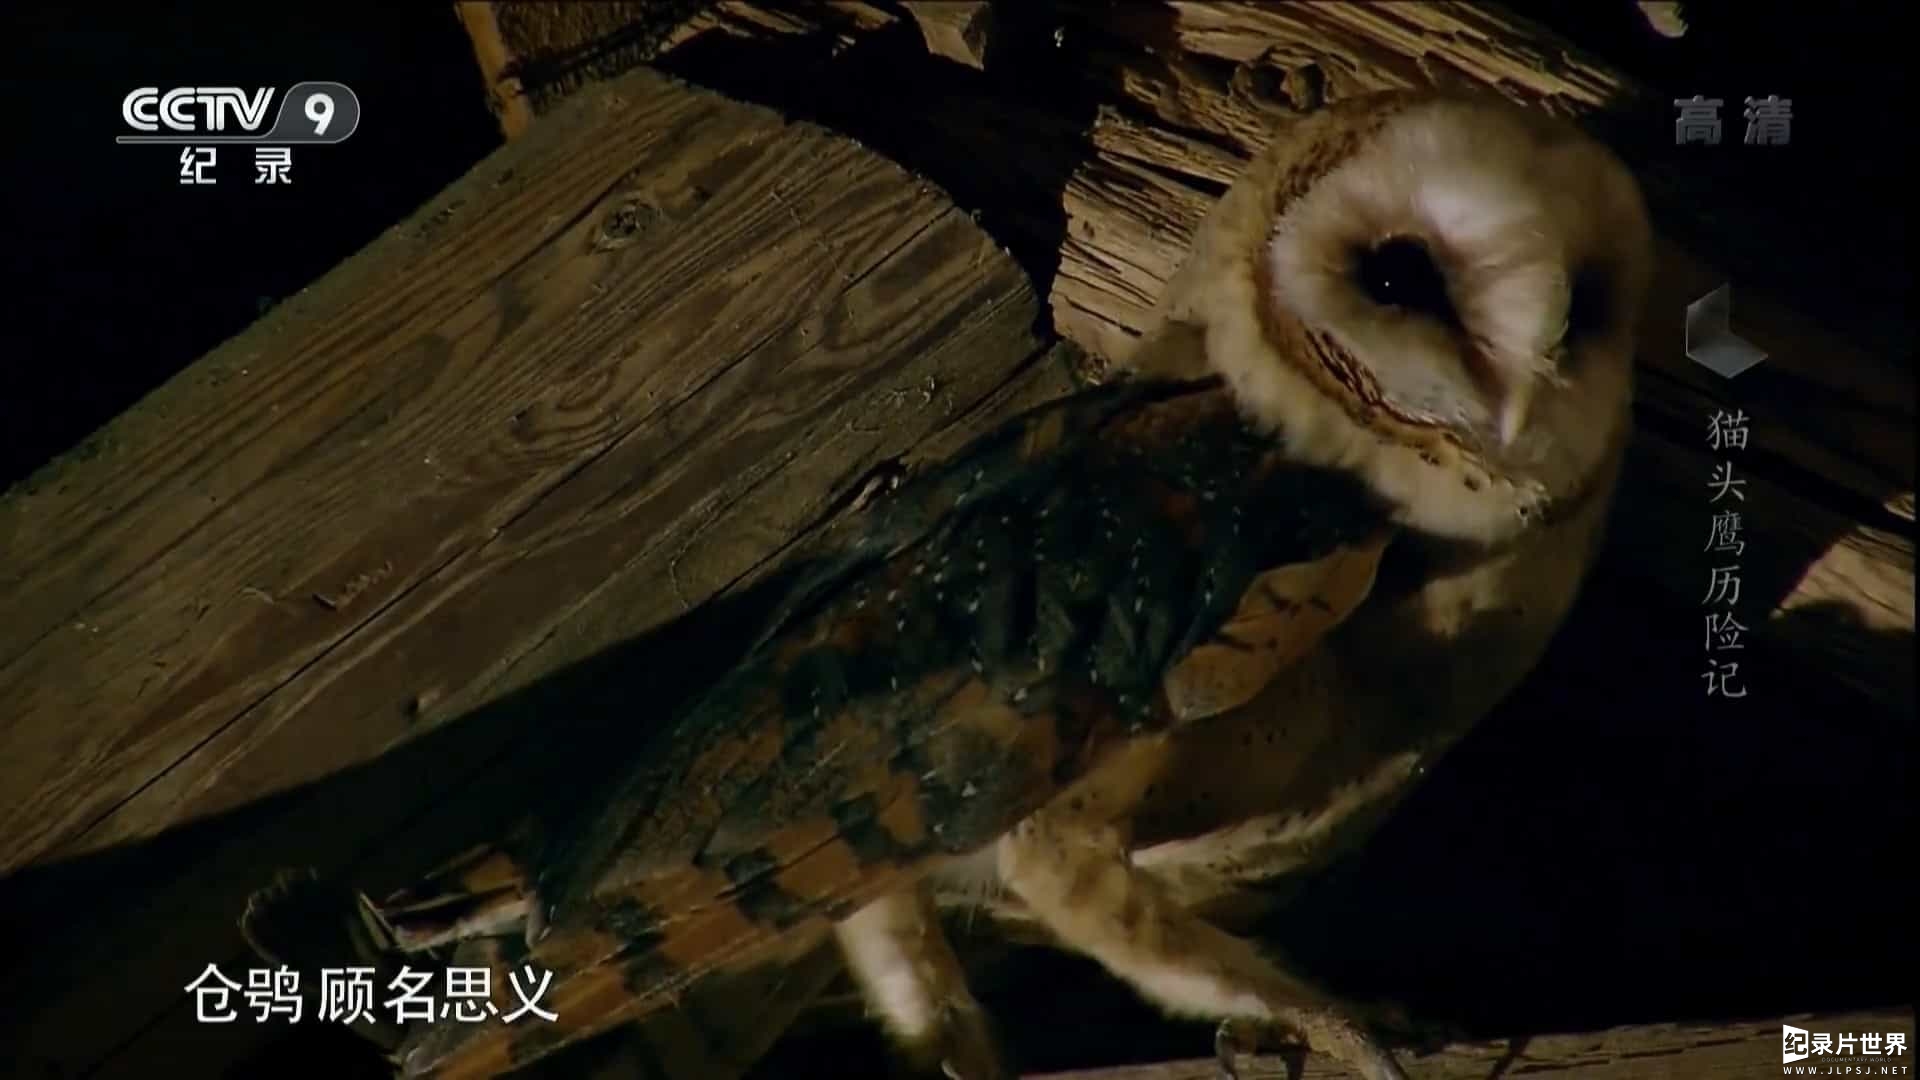 央视纪录片《猫头鹰历险记 Owl Odyssey 2014》全1集